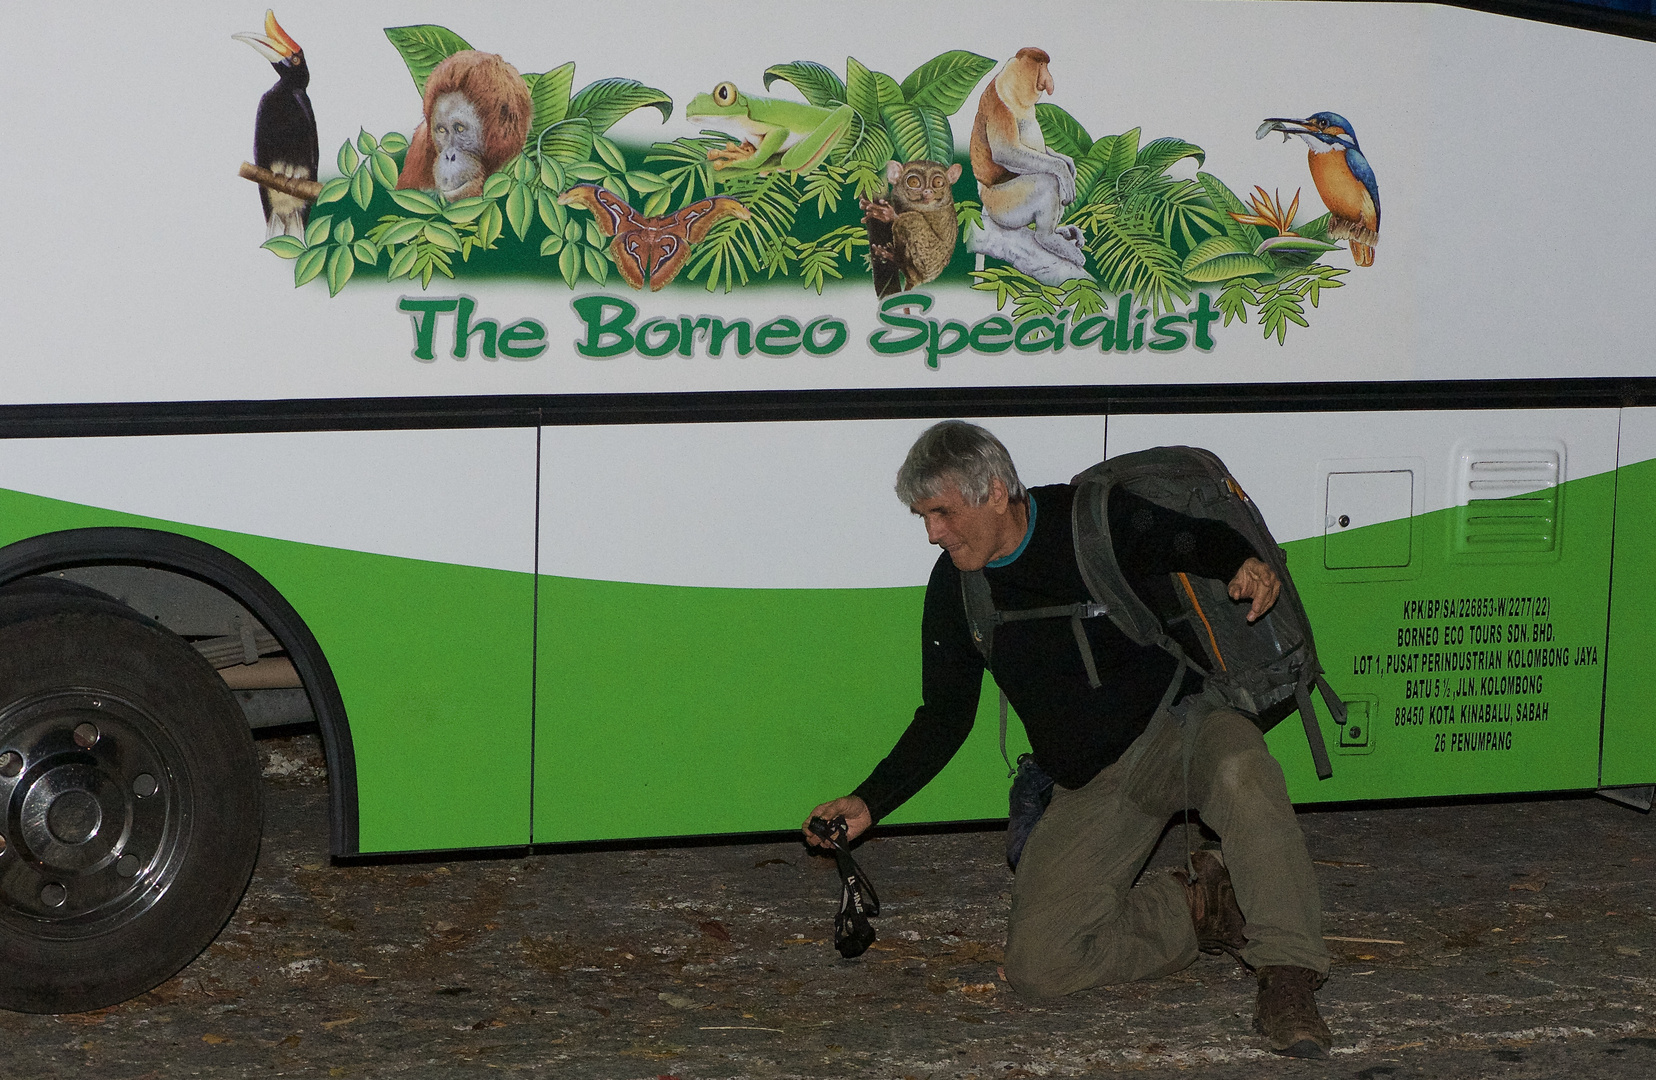 The Borneo Spezialist